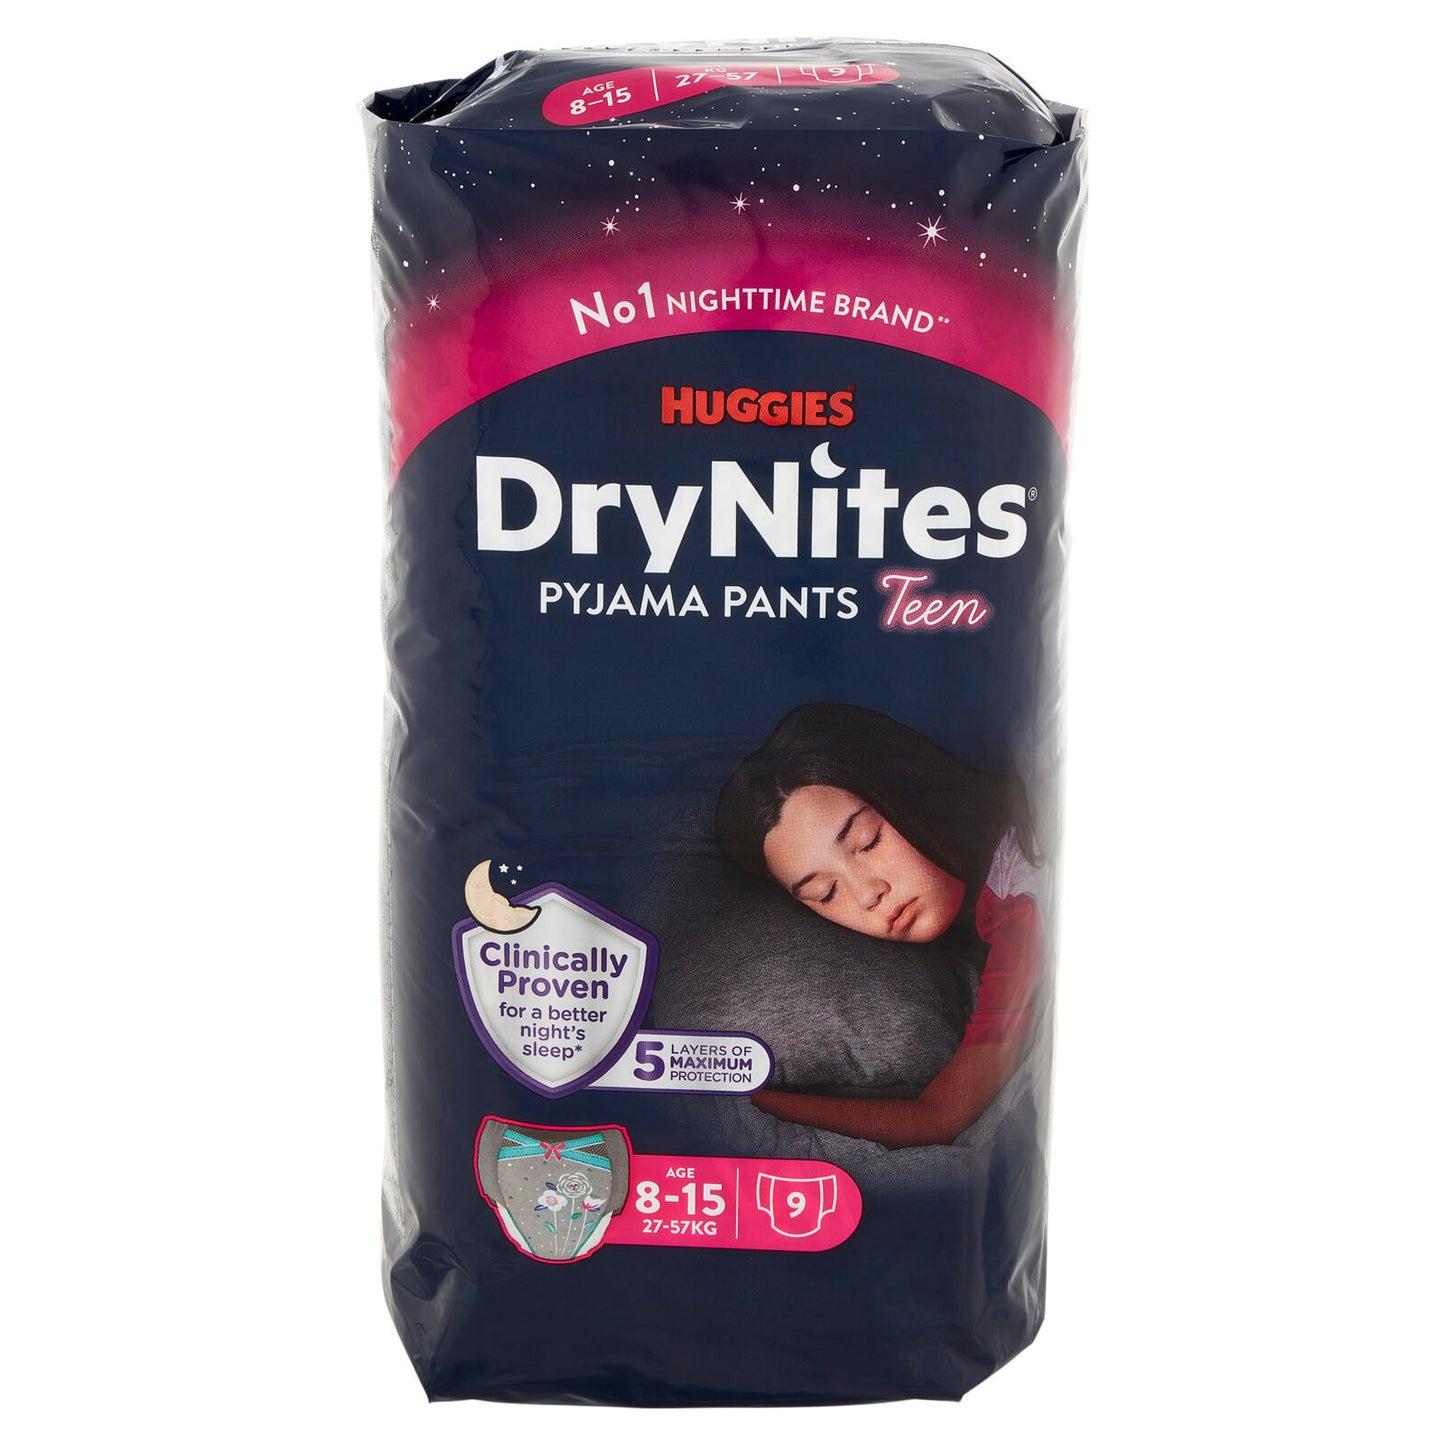 Huggies DryNites Pyjama Pants Teen Age 8-15 27-57 Kg 9 pz